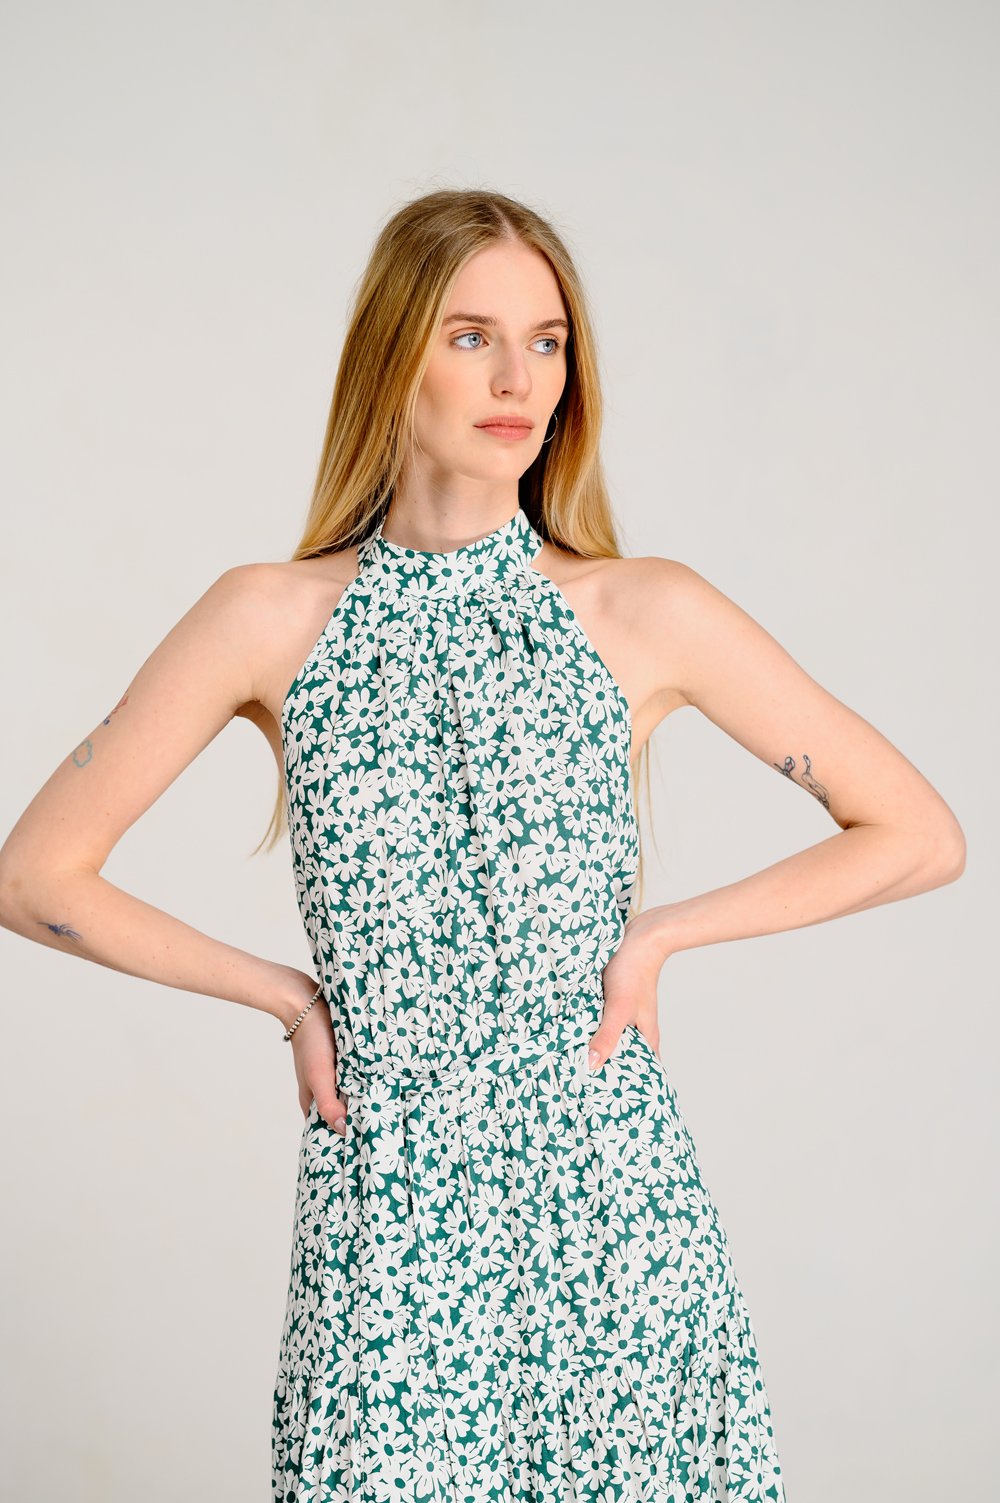 Зеленое платье с открытыми плечами